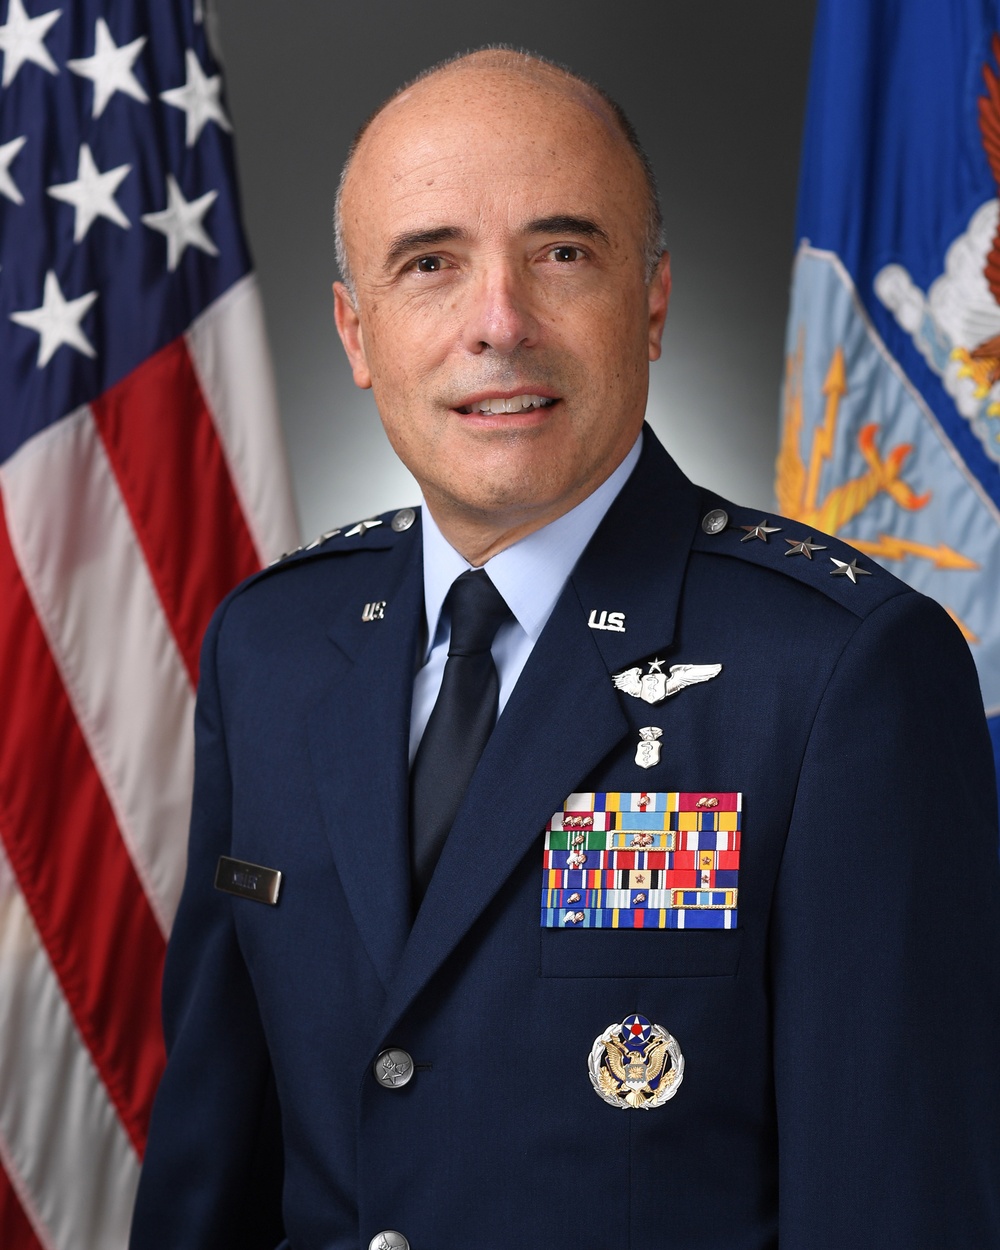 Lt. Gen. Robert I. Miller